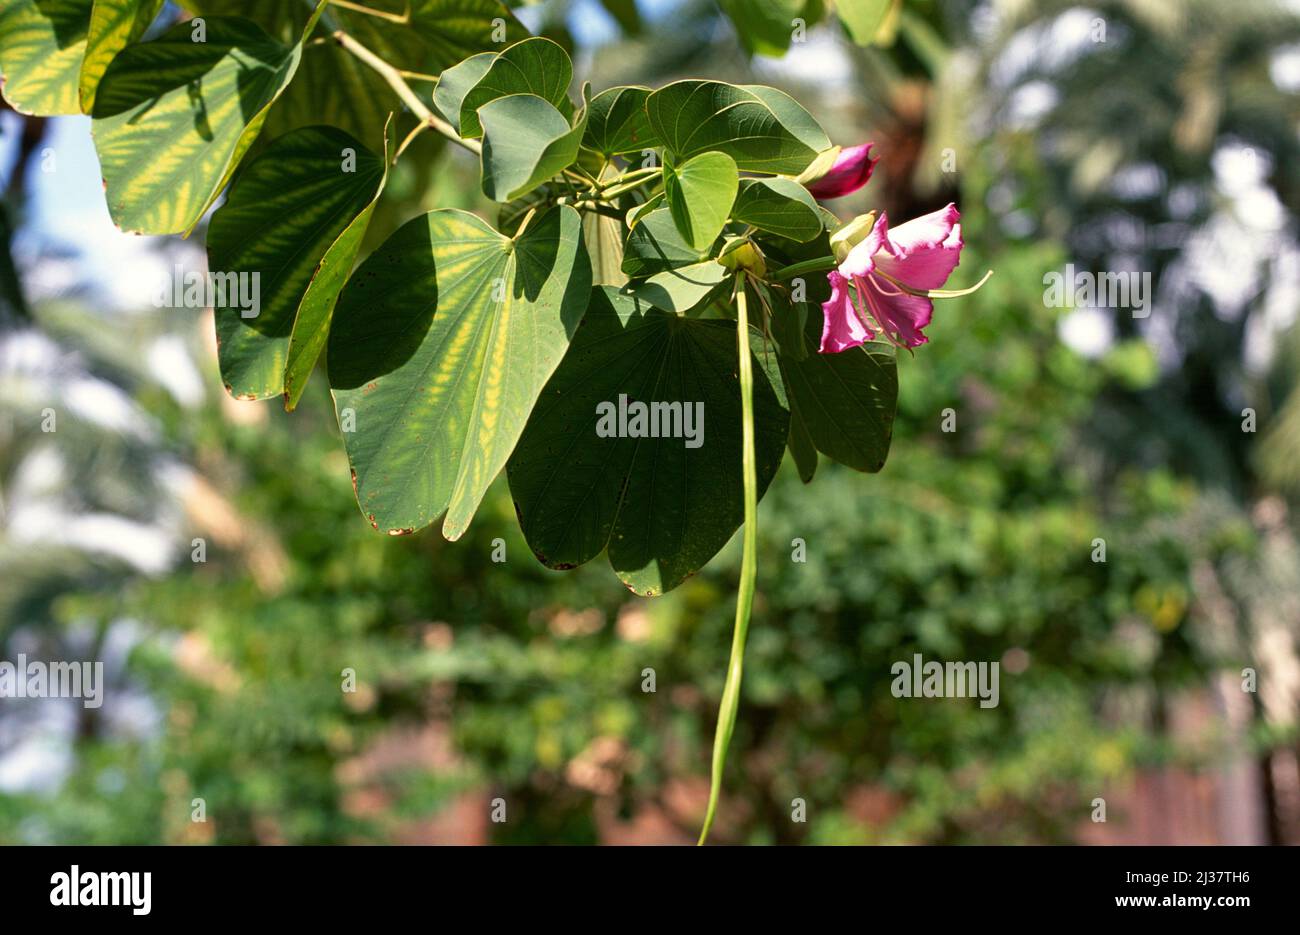 Orchidea o ebano di montagna (Bahuinia variegata) è un albero deciduo originario dell'Asia meridionale. Fiore, frutta e foglie dettaglio. Foto Stock